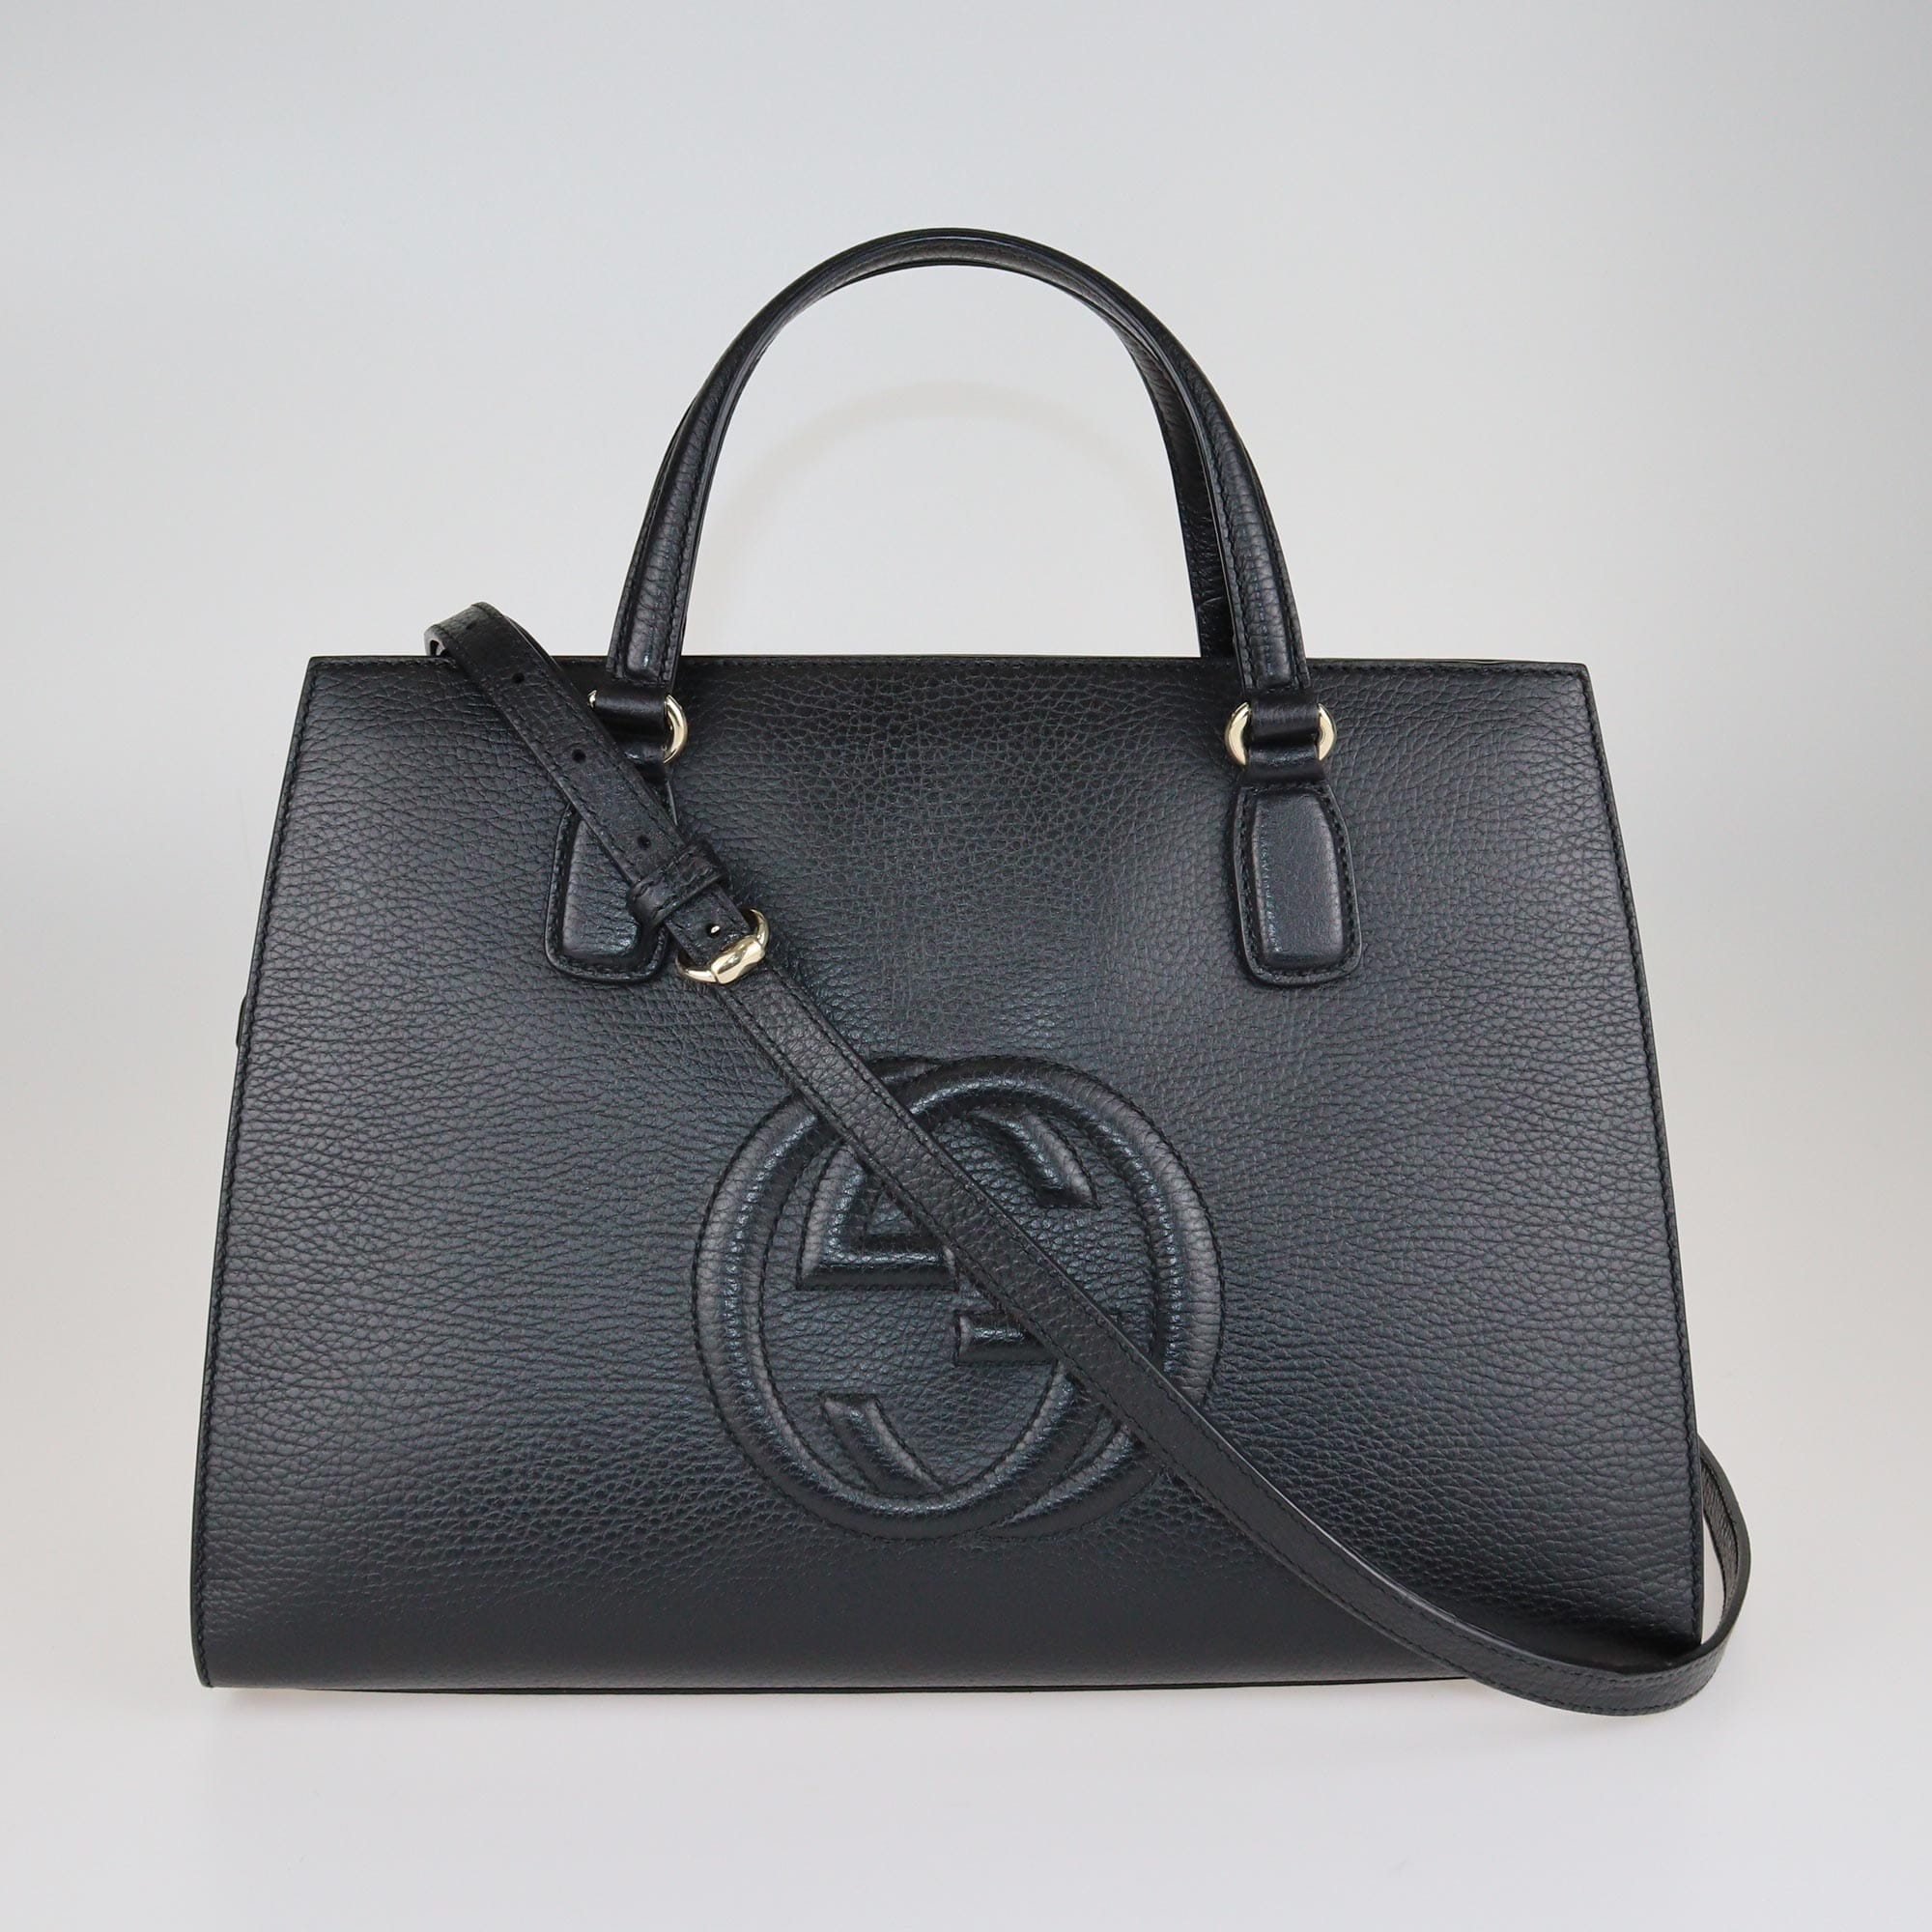 Gucci Black Soho Top Handle Bag Bags Gucci 